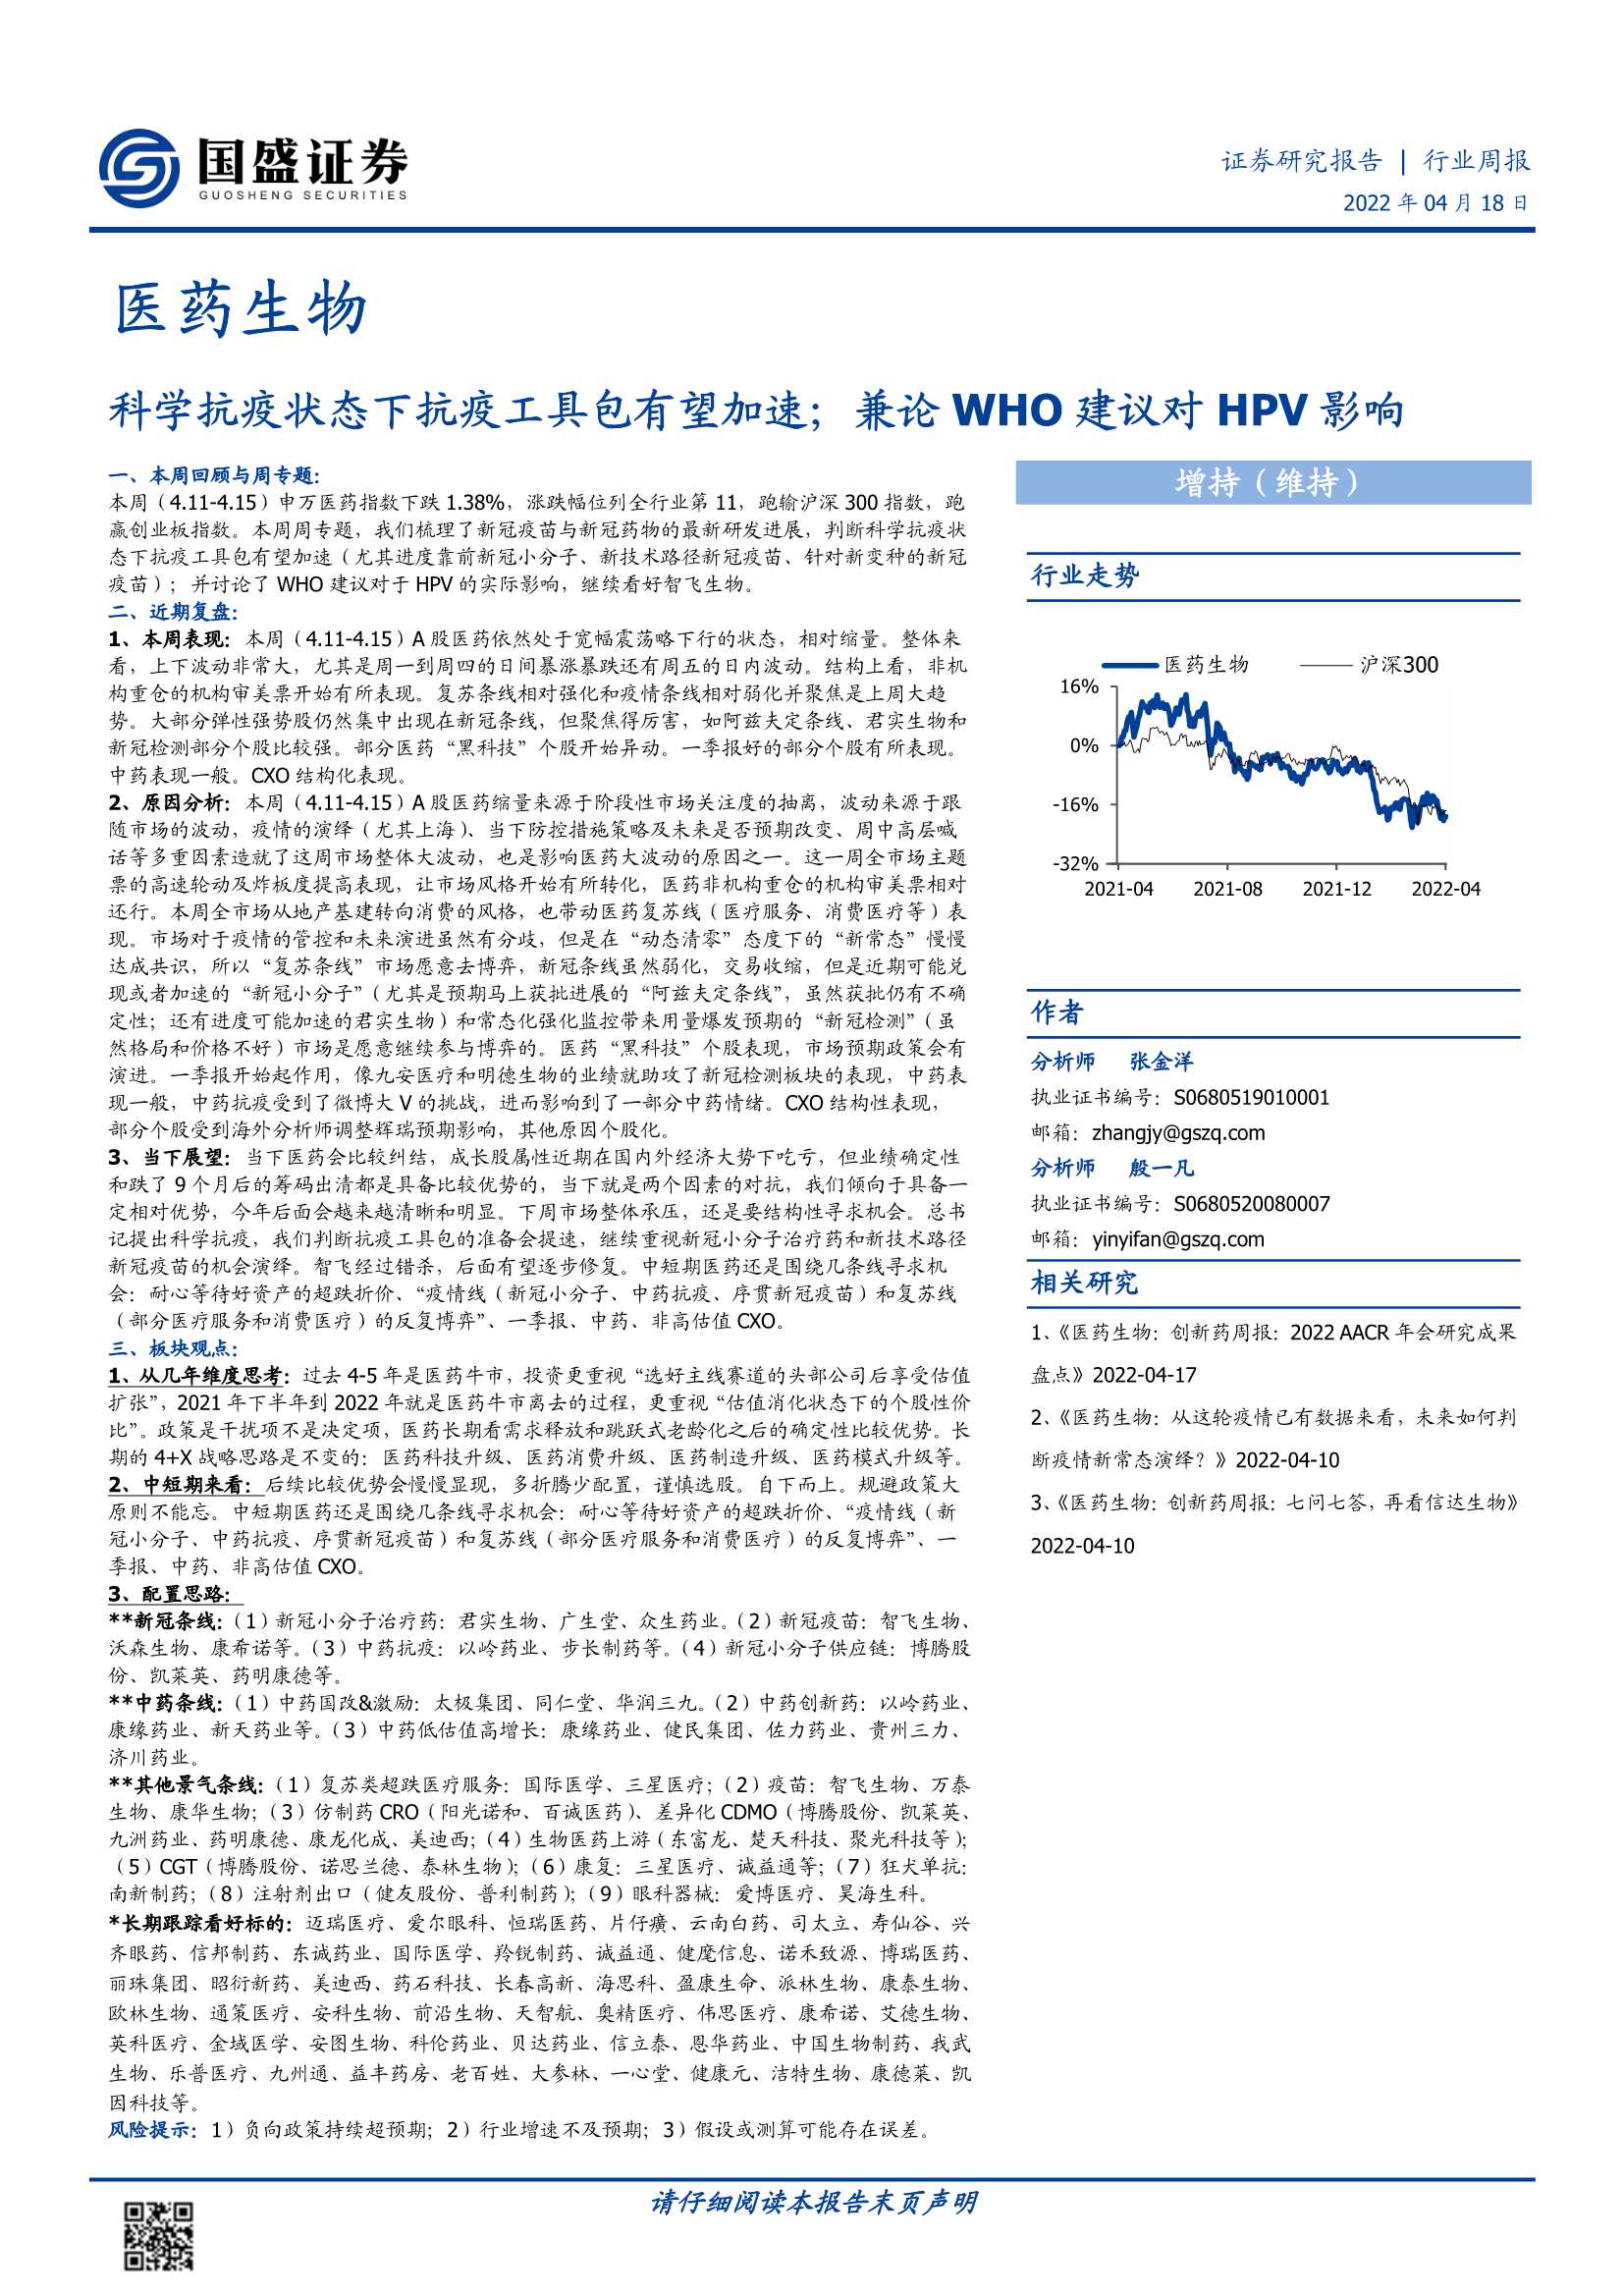 医药生物行业周报：科学抗疫状态下抗疫工具包有望加速；兼论WHO建议对HPV影响-20220418-国盛证券-26页